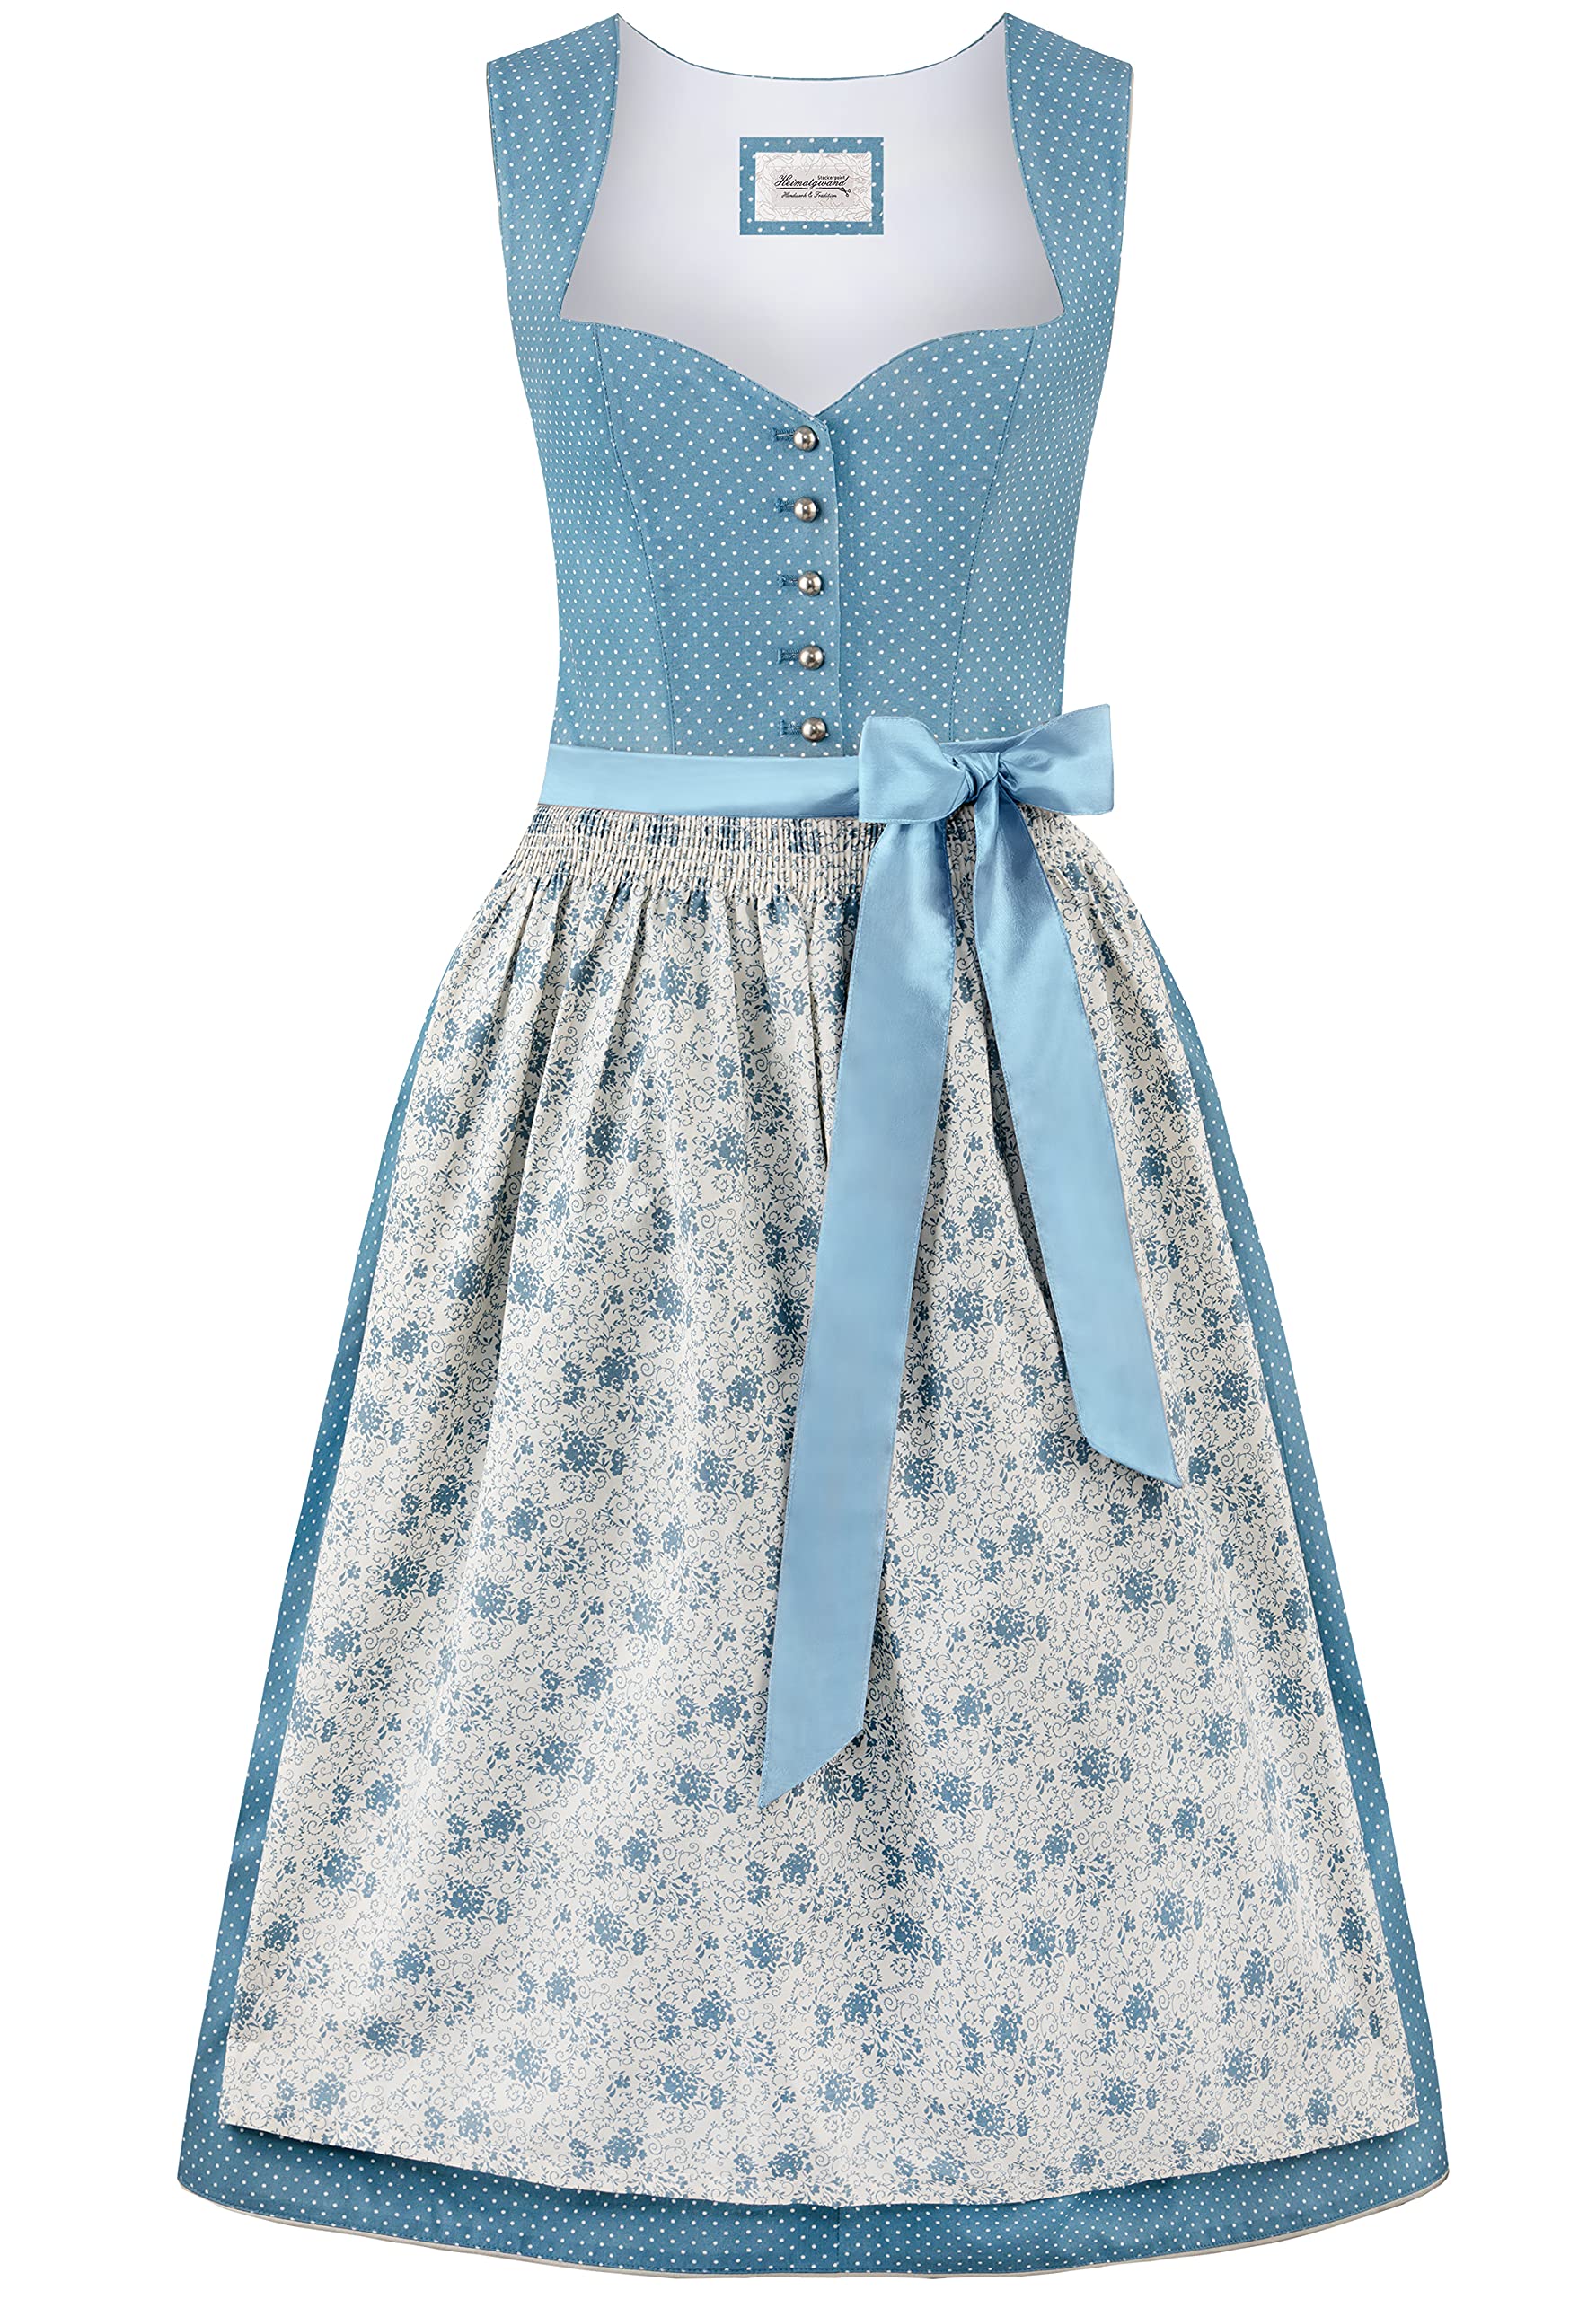 Stockerpoint Damen Edonita Kleid, blau, 44